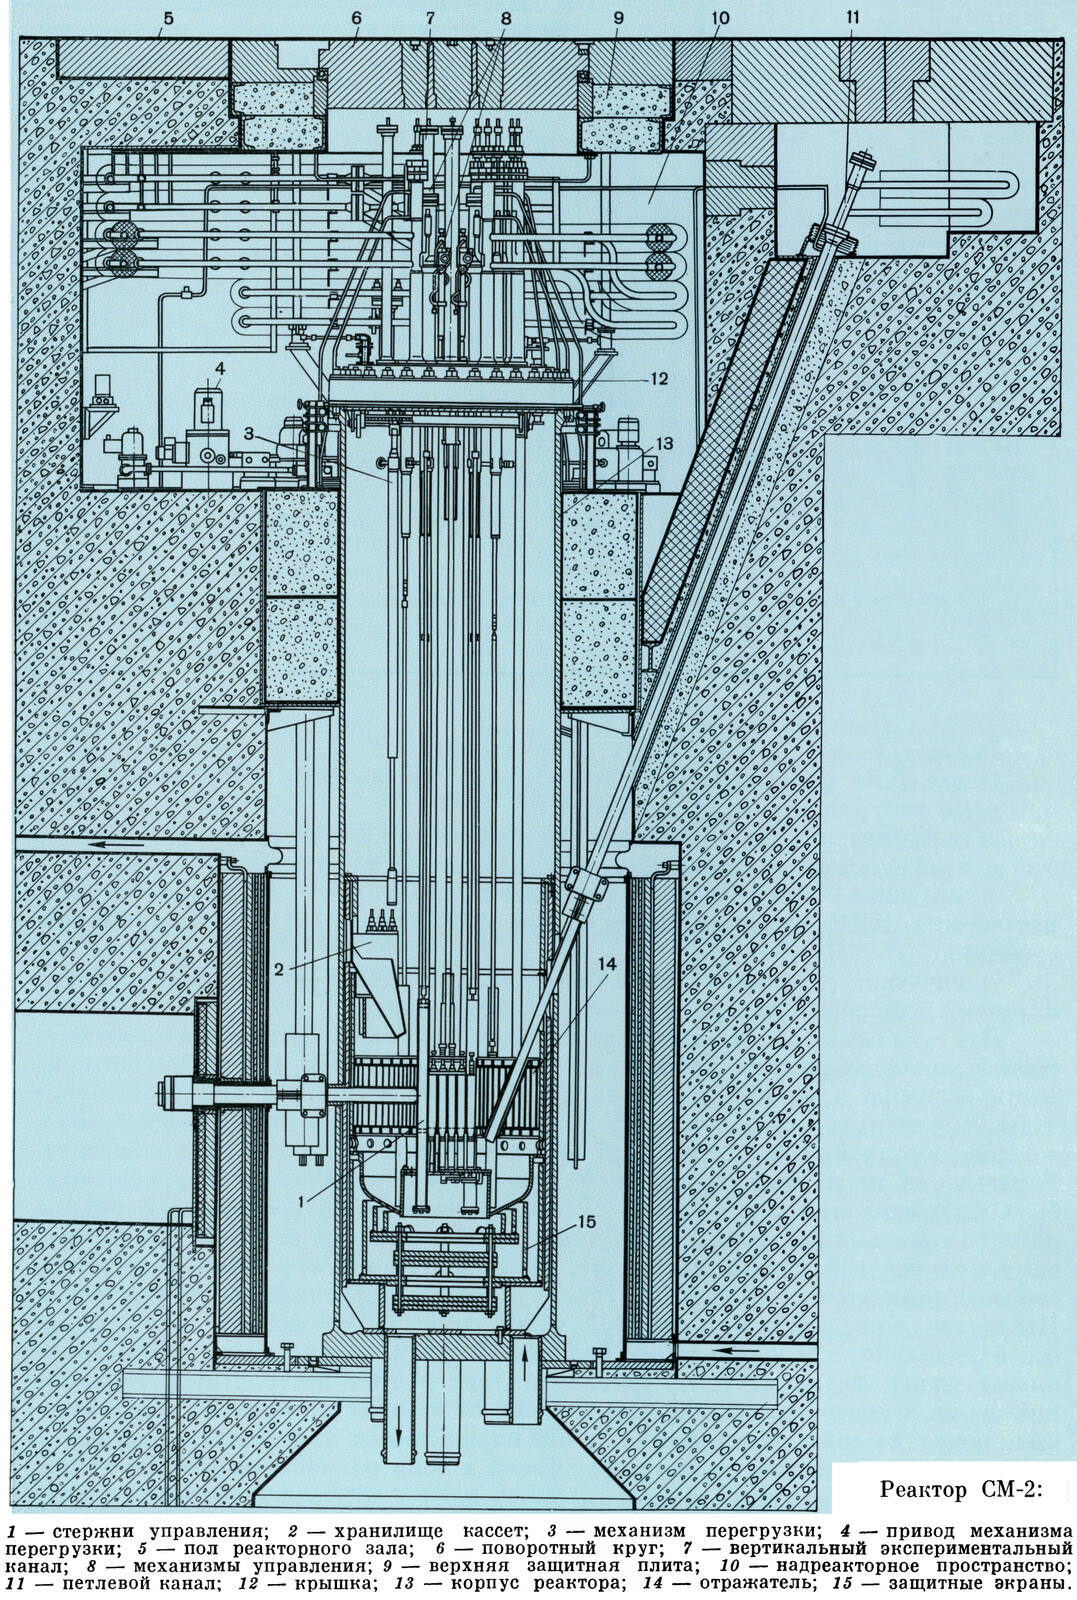 Реактор СМ-2